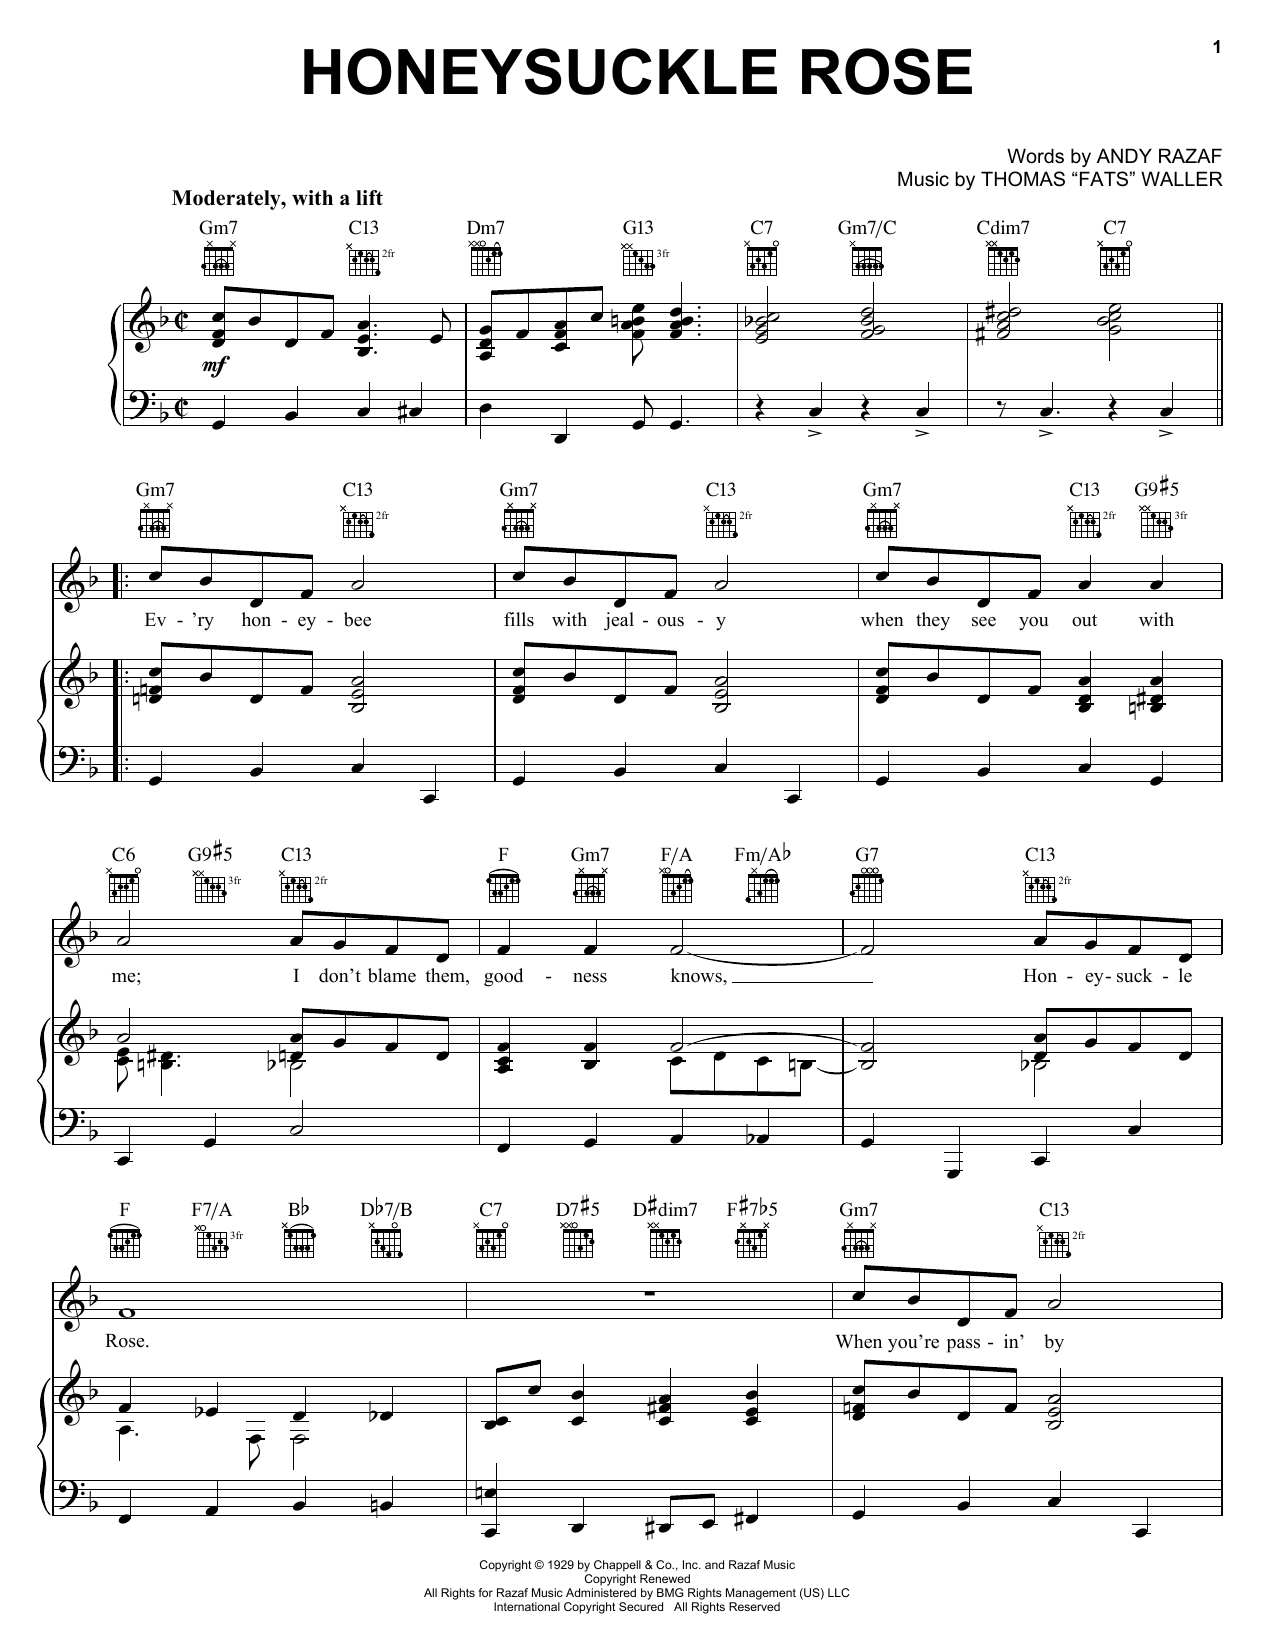 Django Reinhardt Honeysuckle Rose Sheet Music Notes & Chords for Electric Guitar Transcription - Download or Print PDF